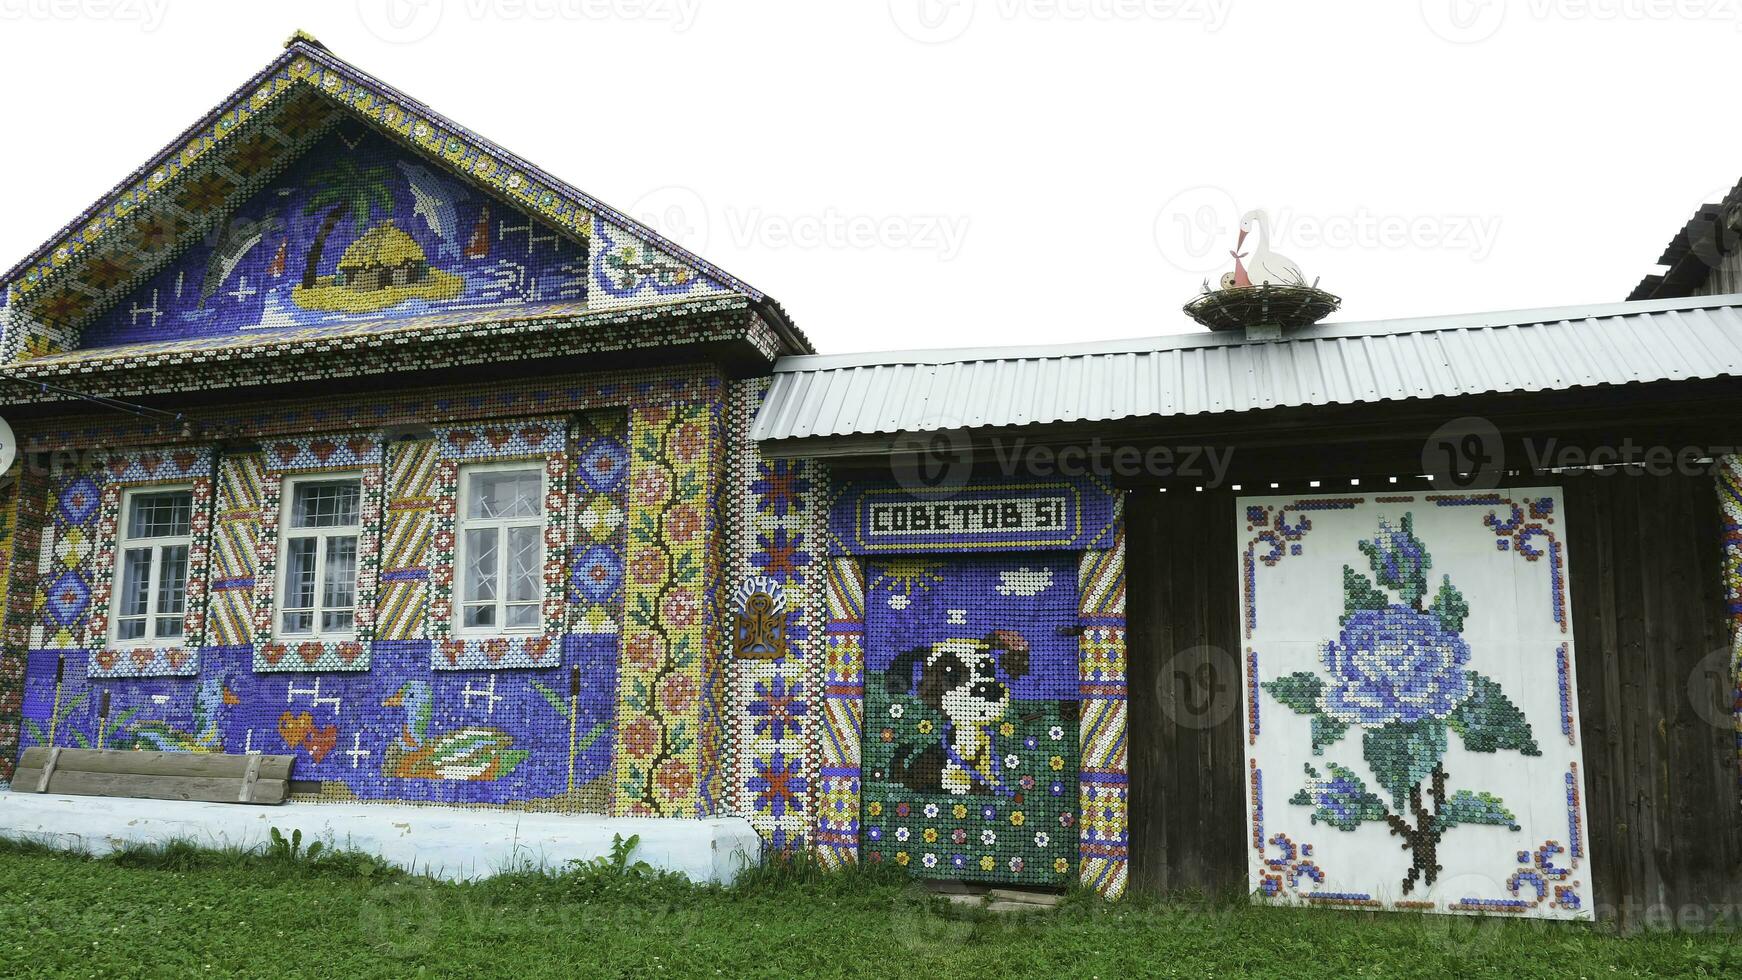 inhabituel façade un vieux en bois maison décoré par coloré mosaïque des photos de petit Plastique bouteille casquettes, la créativité concept. Stock images. magnifique et brillant main fabriqué mosaïque mur.